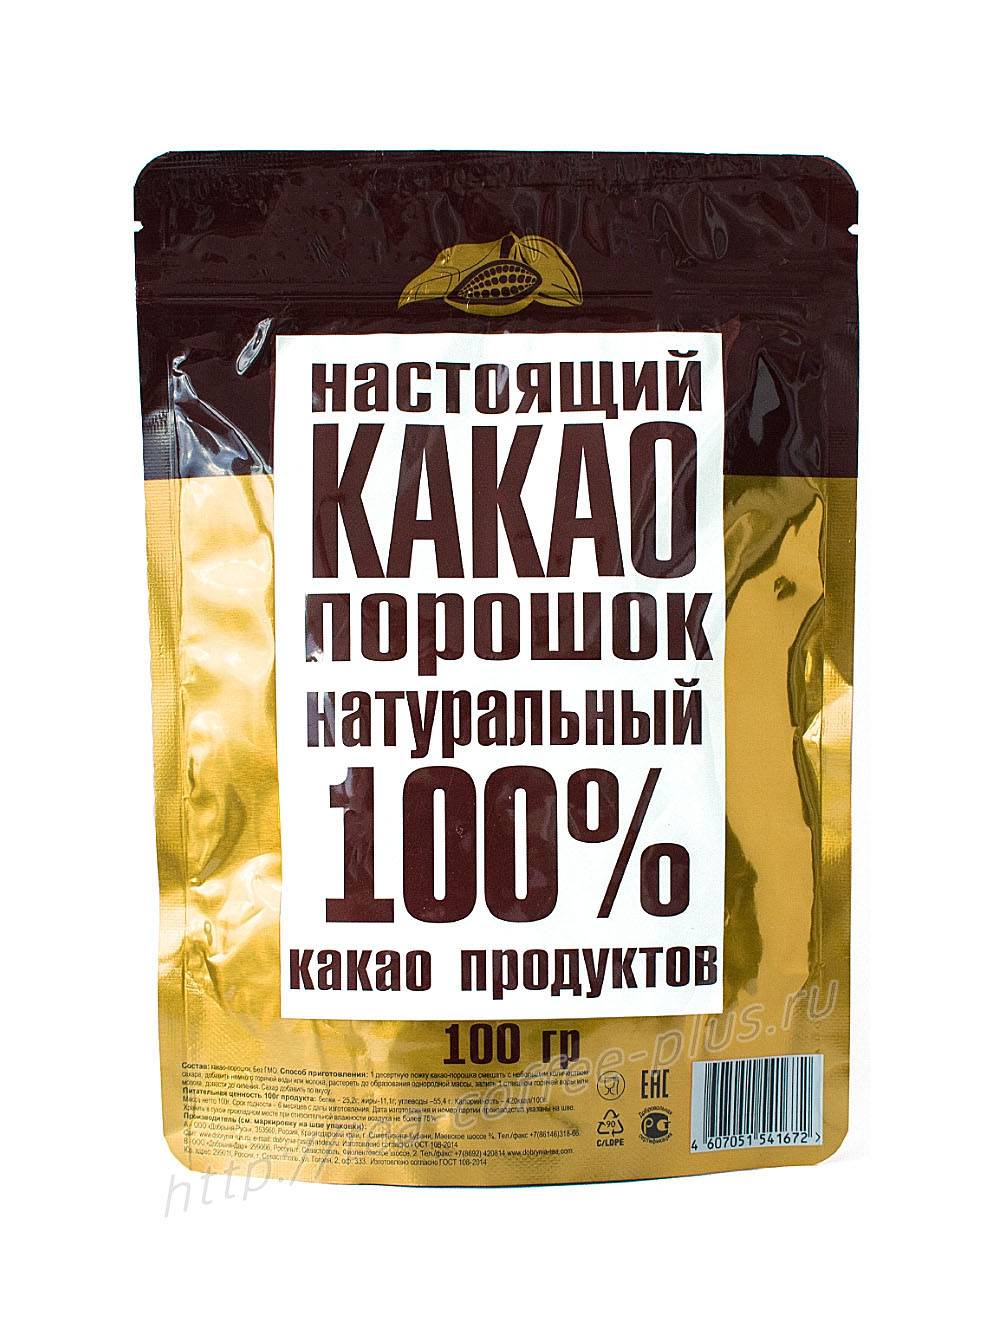 Лучший российский шоколад: рейтинг самых качественных и вкусных марок и какие моменты стоит учитывать при выборе продукта?